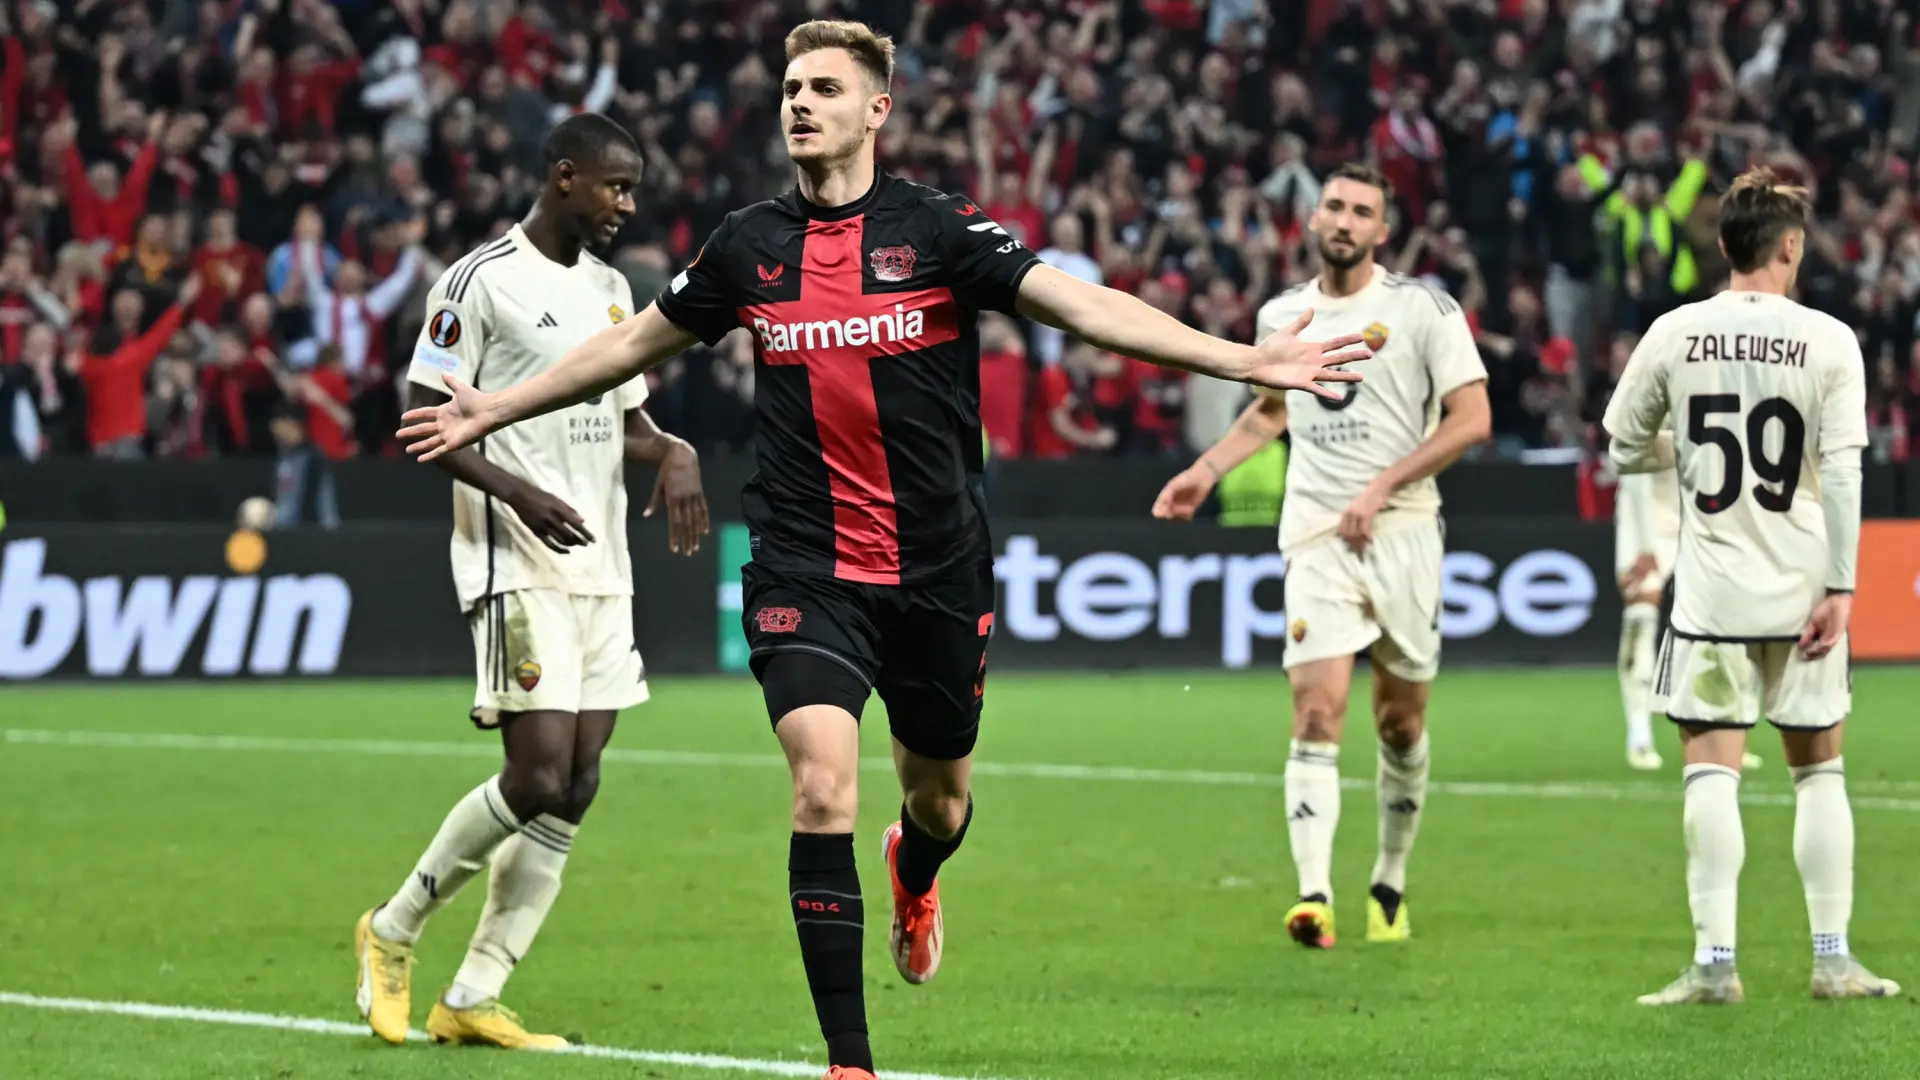 El Leverkusen se inventa la enésima remontada milagro y llega invicto a la final de la Europa League